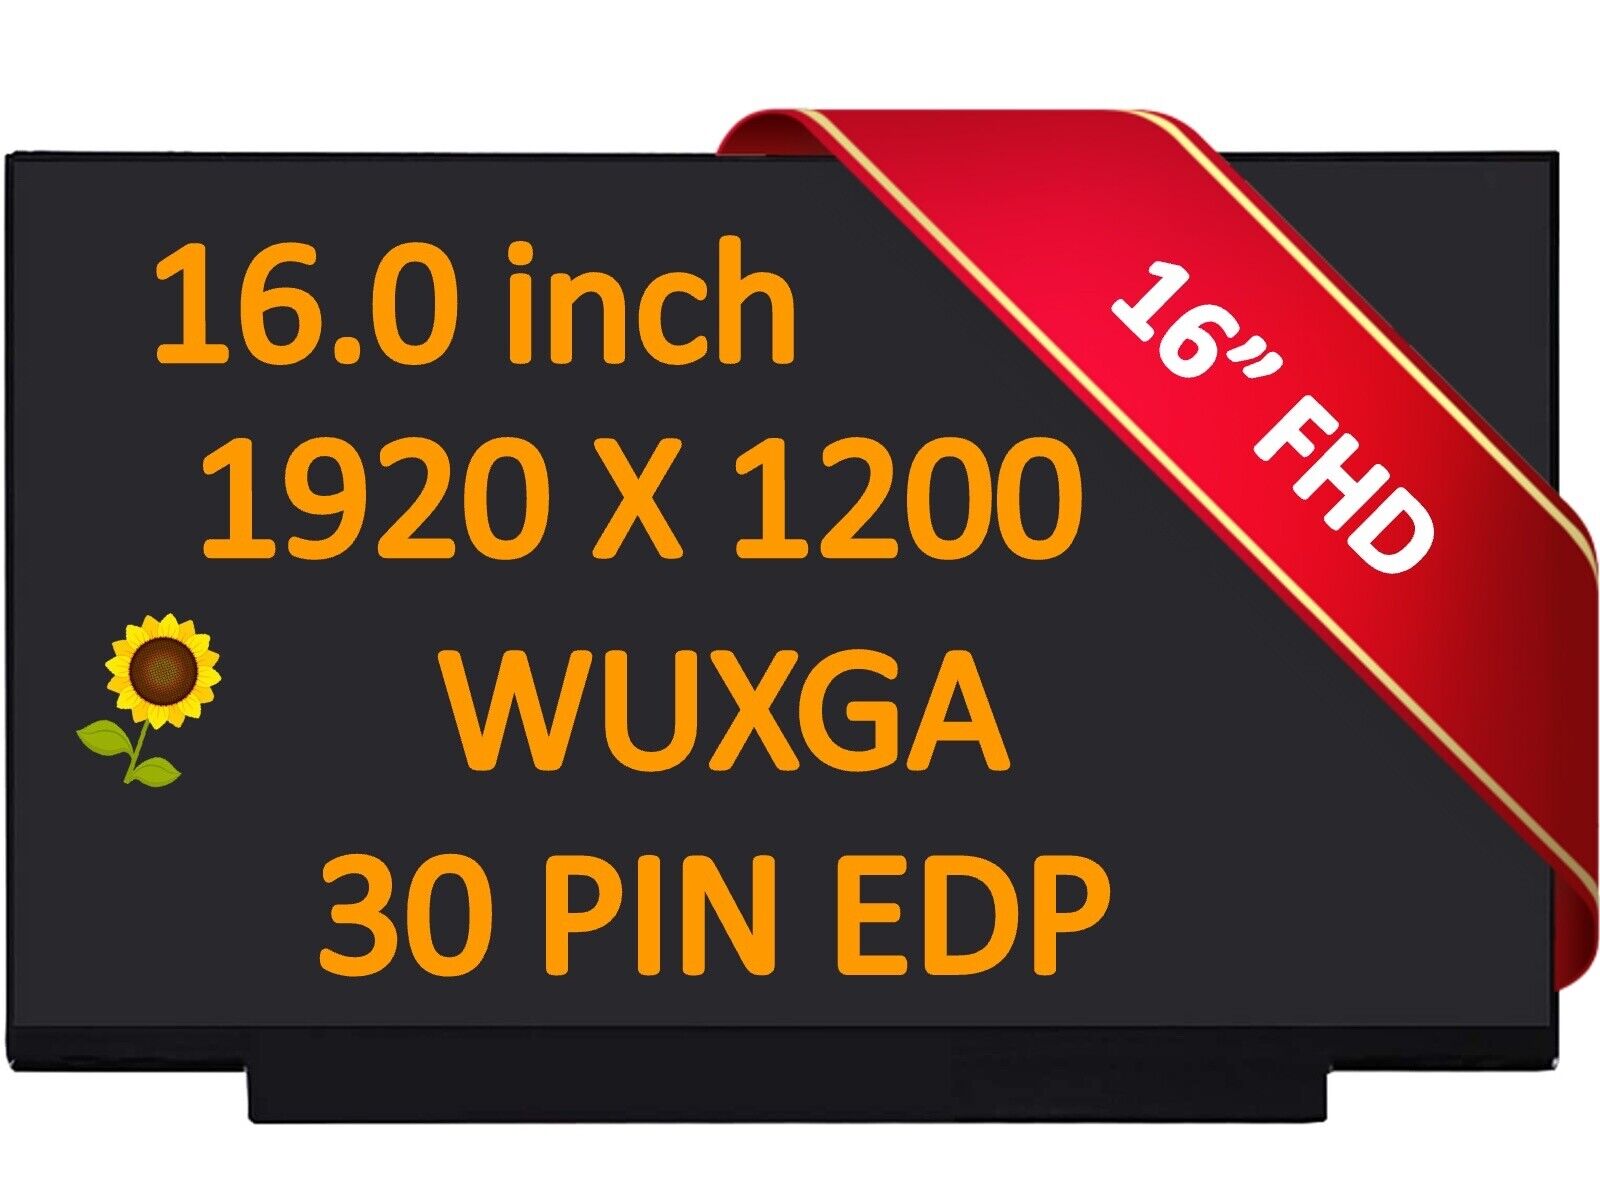 NV160WUM-NH0 1920X1200P FHD IPS 60HZ 16.0